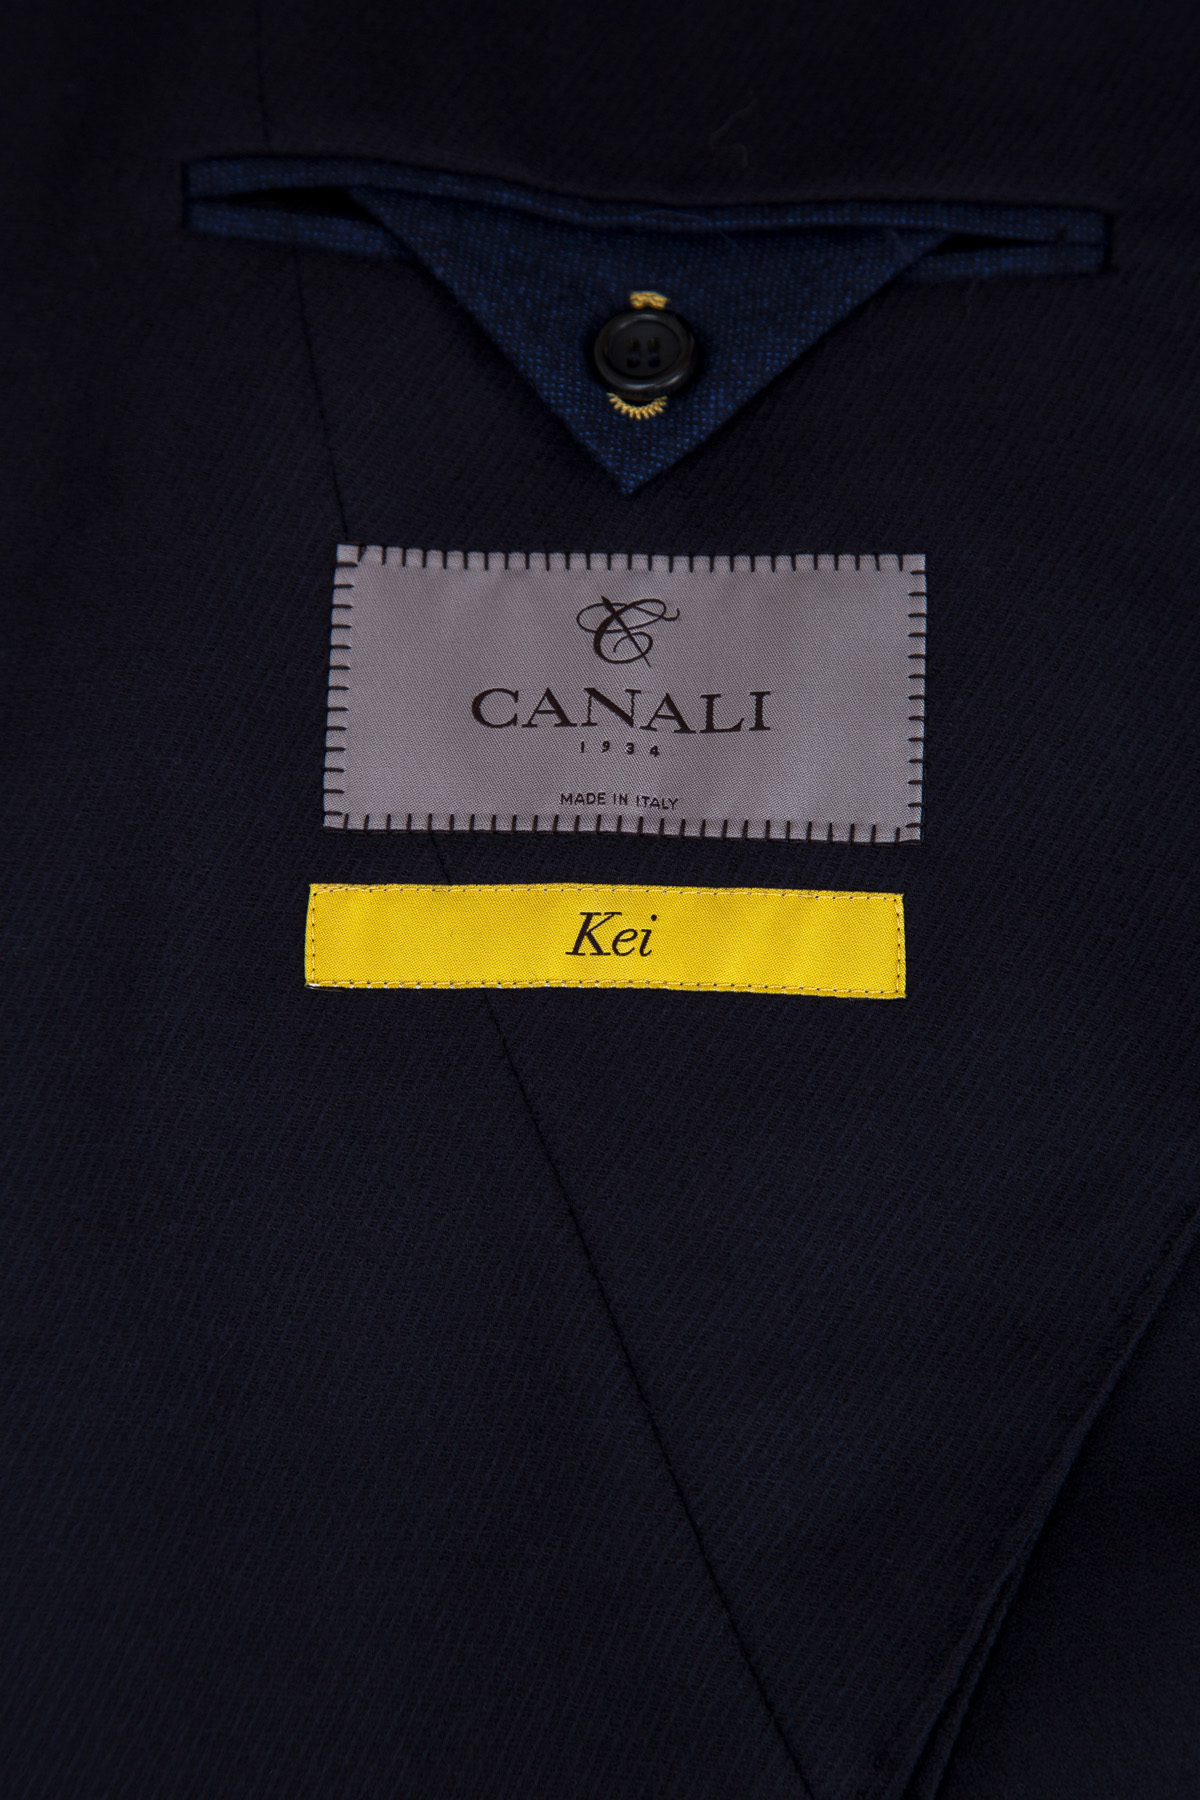 Пальто Kei ручной работы из шерстяной ткани CANALI, цвет синий, размер 48;50;54 - фото 6